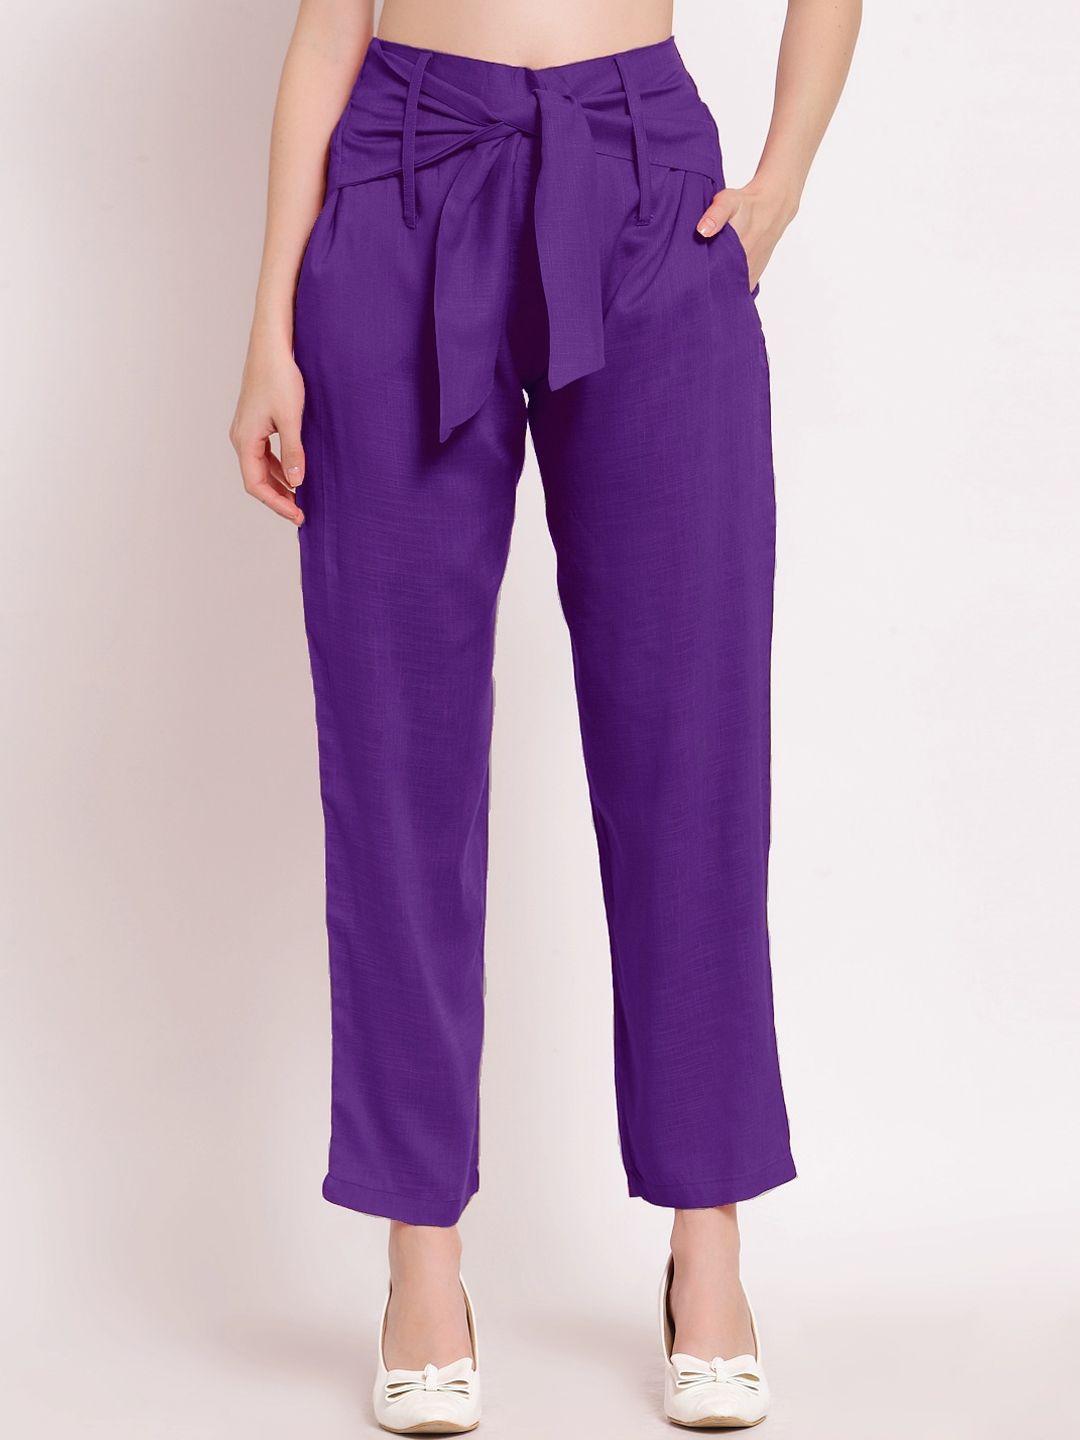 patrorna-women-smart-pleated-trousers